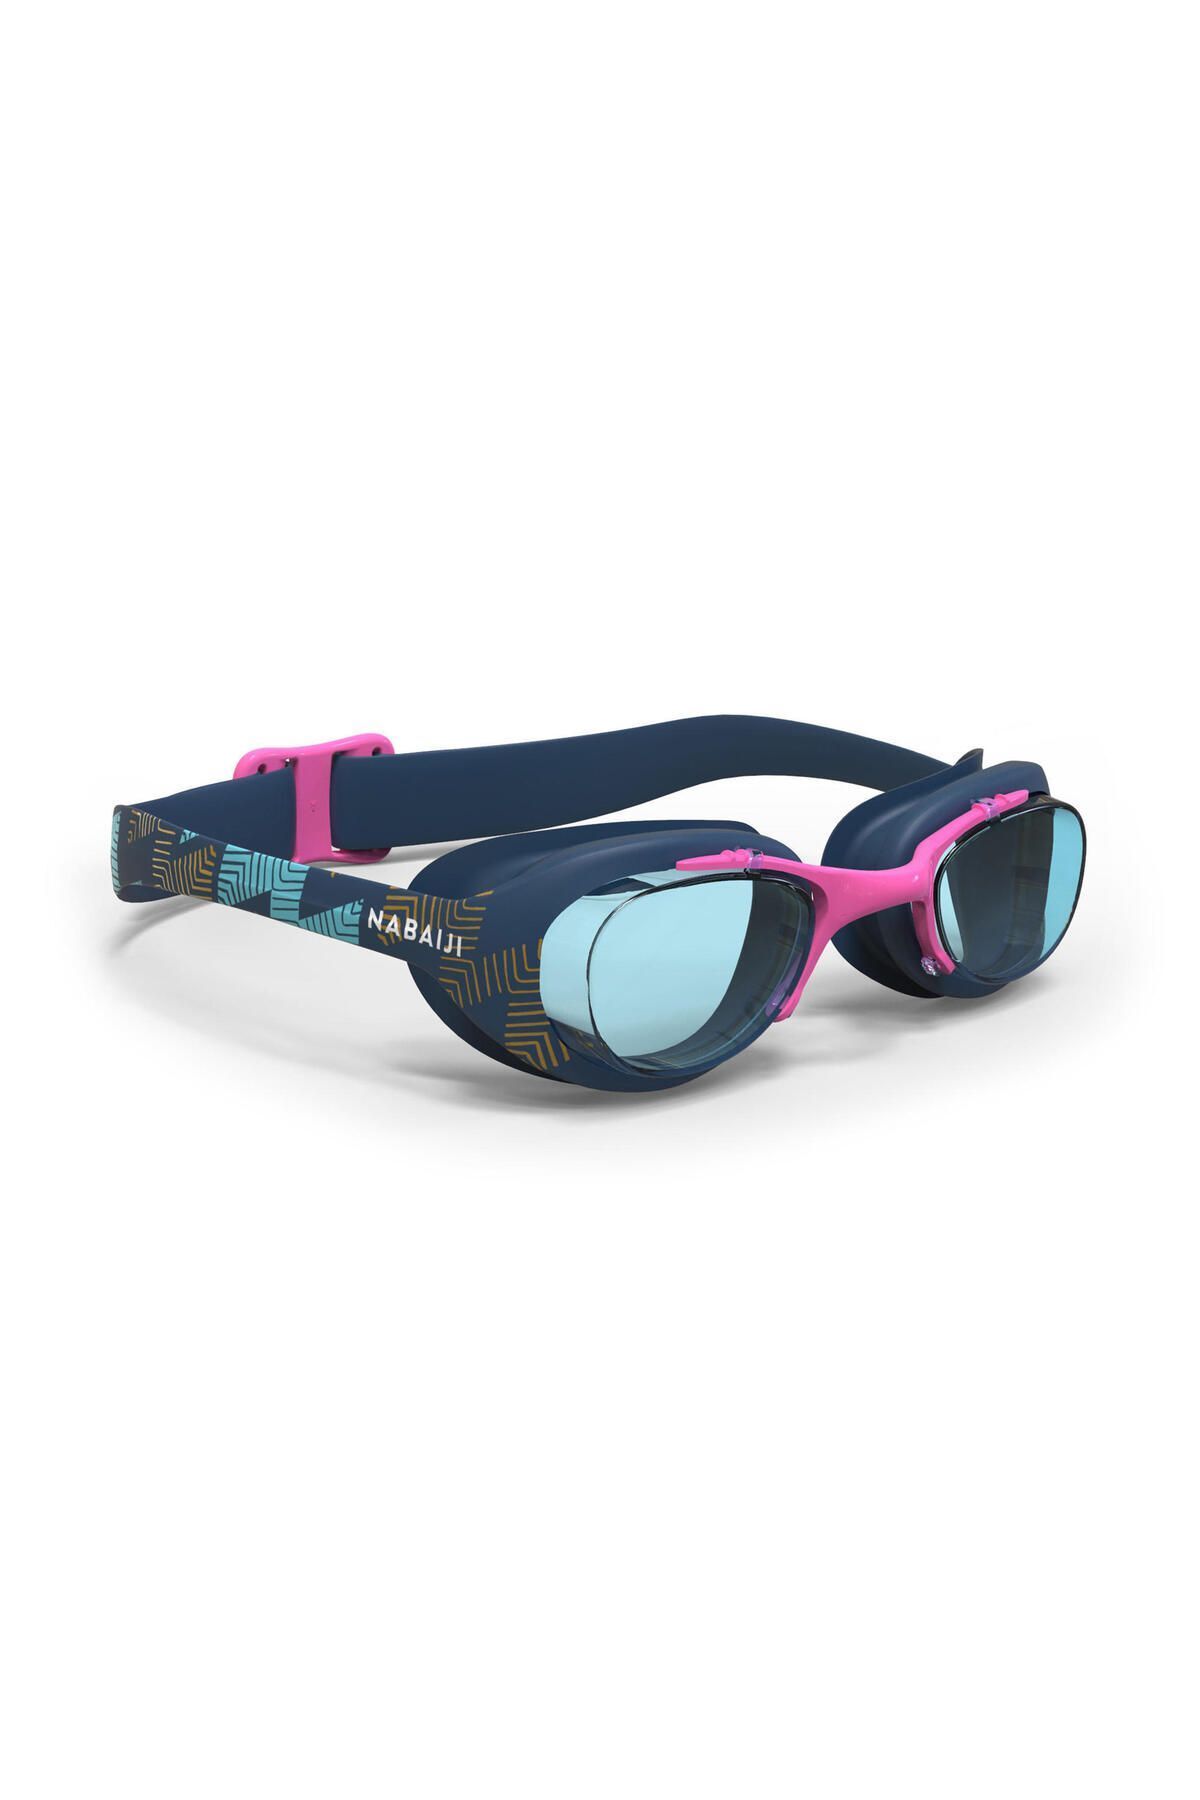 Decathlon Nabaiji Şeffaf Camlı Yüzücü Gözlüğü - L Boy - Lacivert / Pembe / Altın Rengi - 100 Xbase